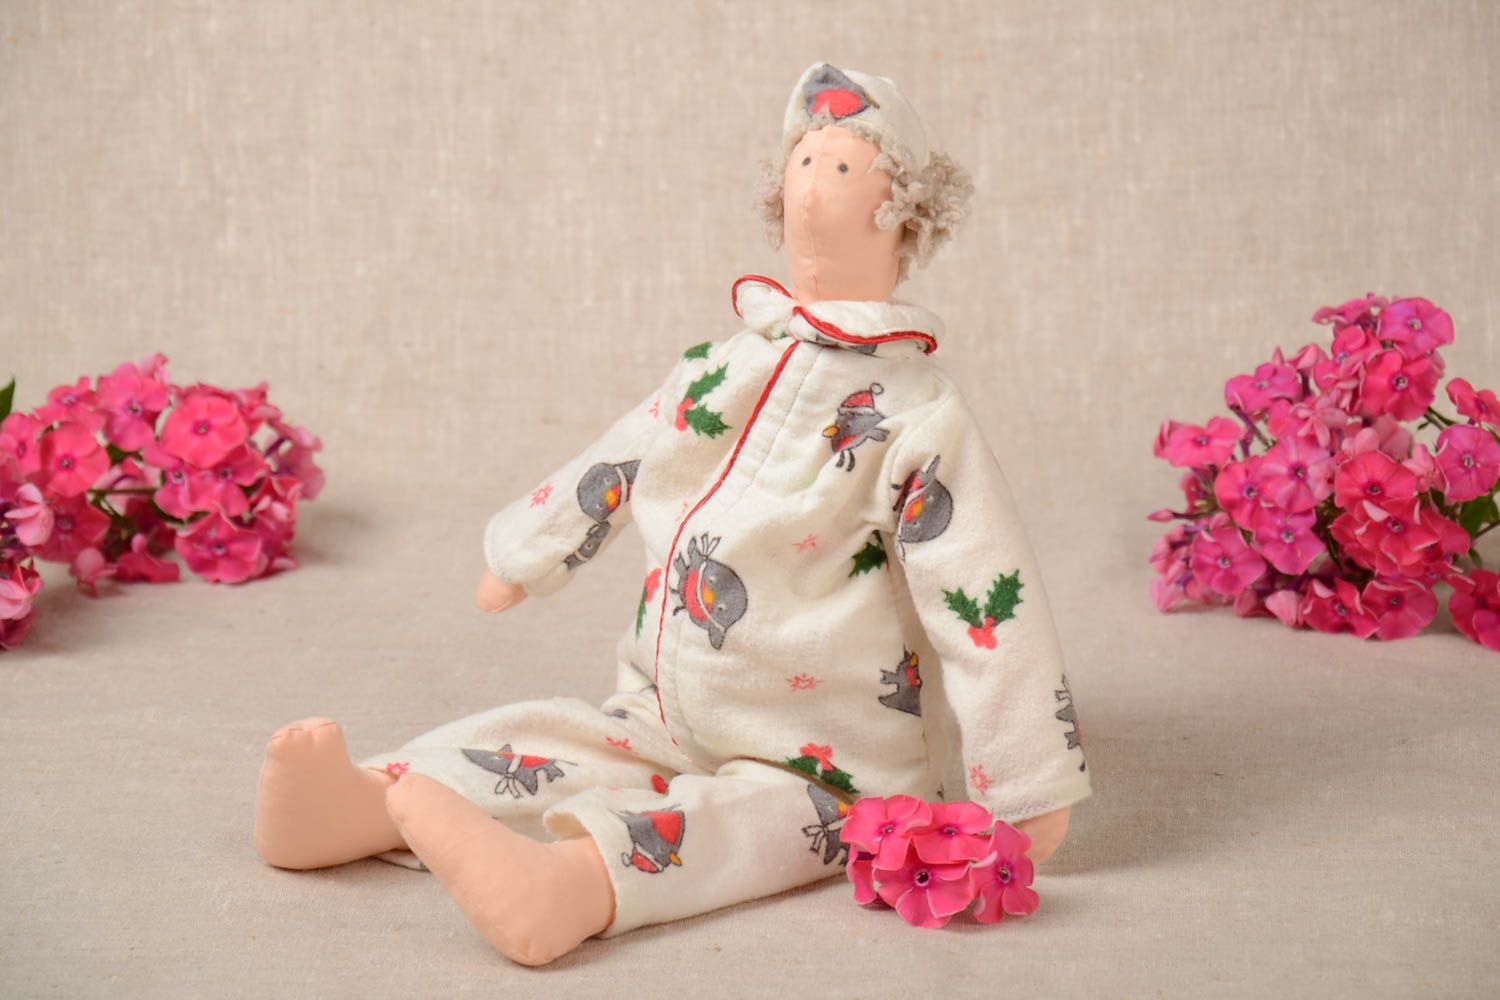 Авторская мягкая кукла ручной работы из хлопка Соня игрушка для дома и детей фото 1